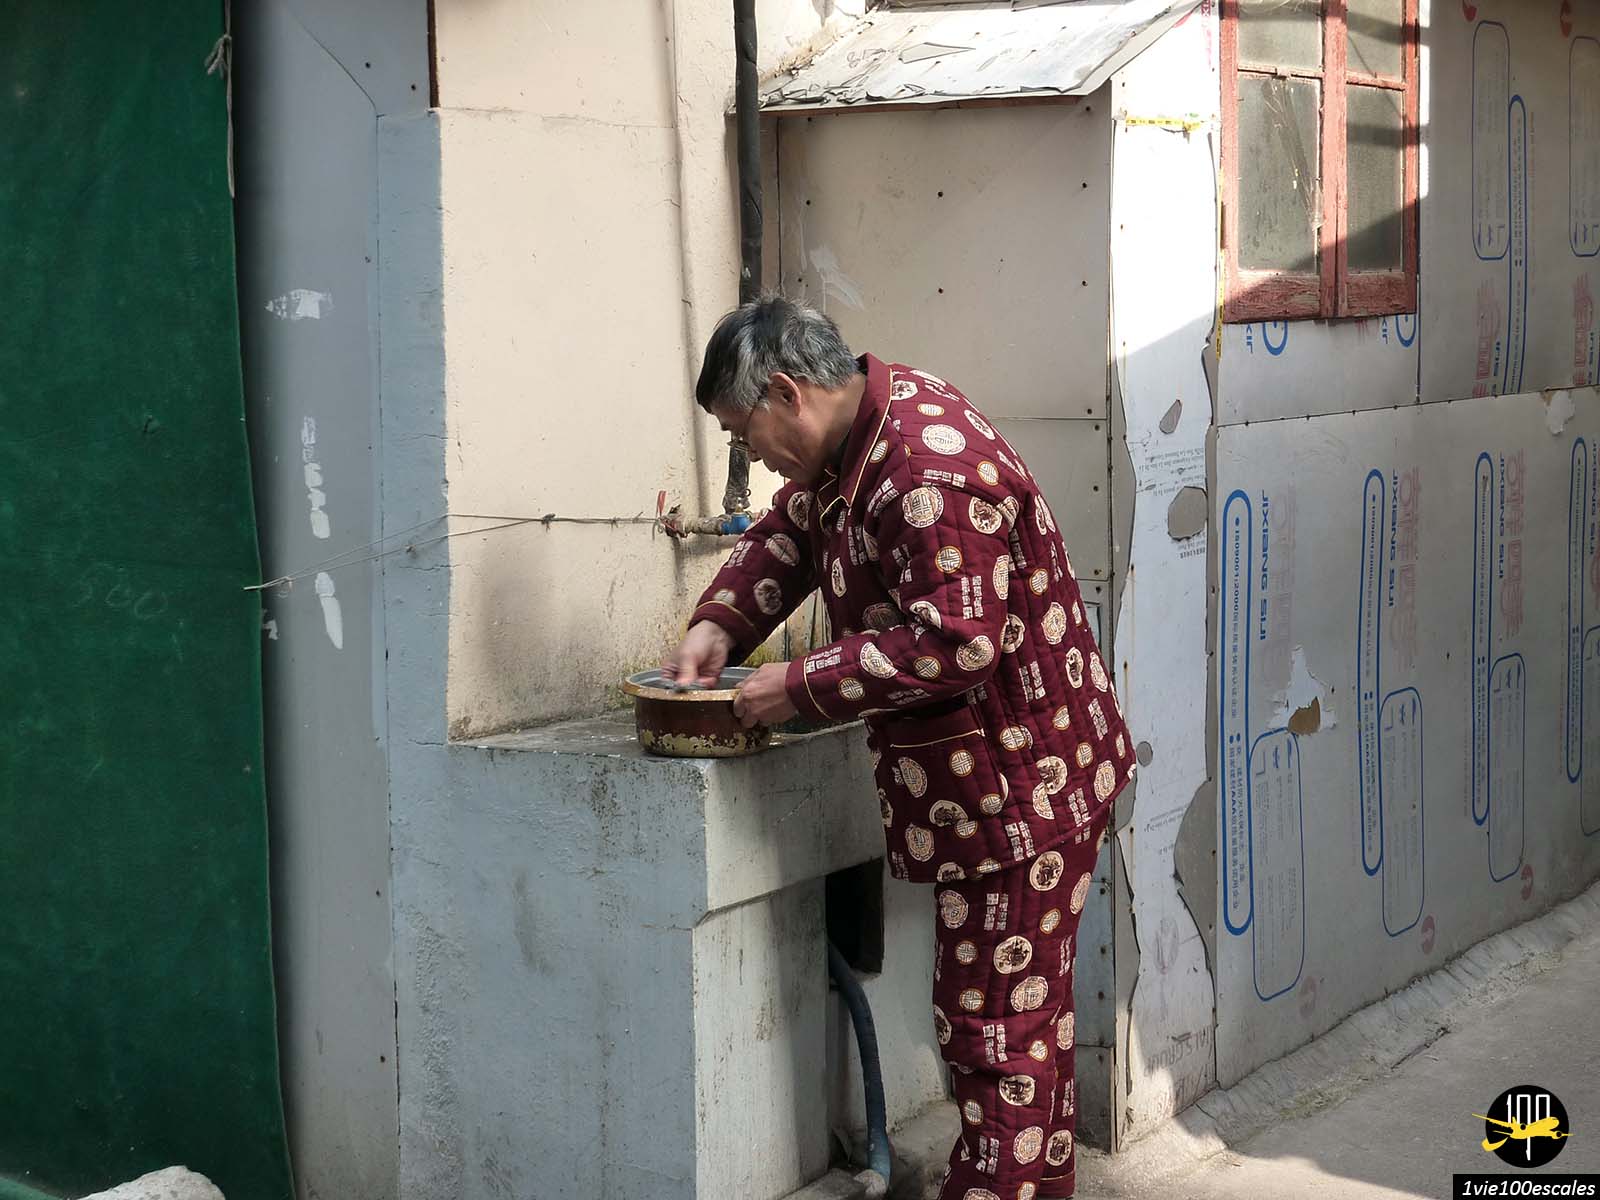 Le pyjama en pleine rue, vieille habitude, fait débat à Shanghai en Chine